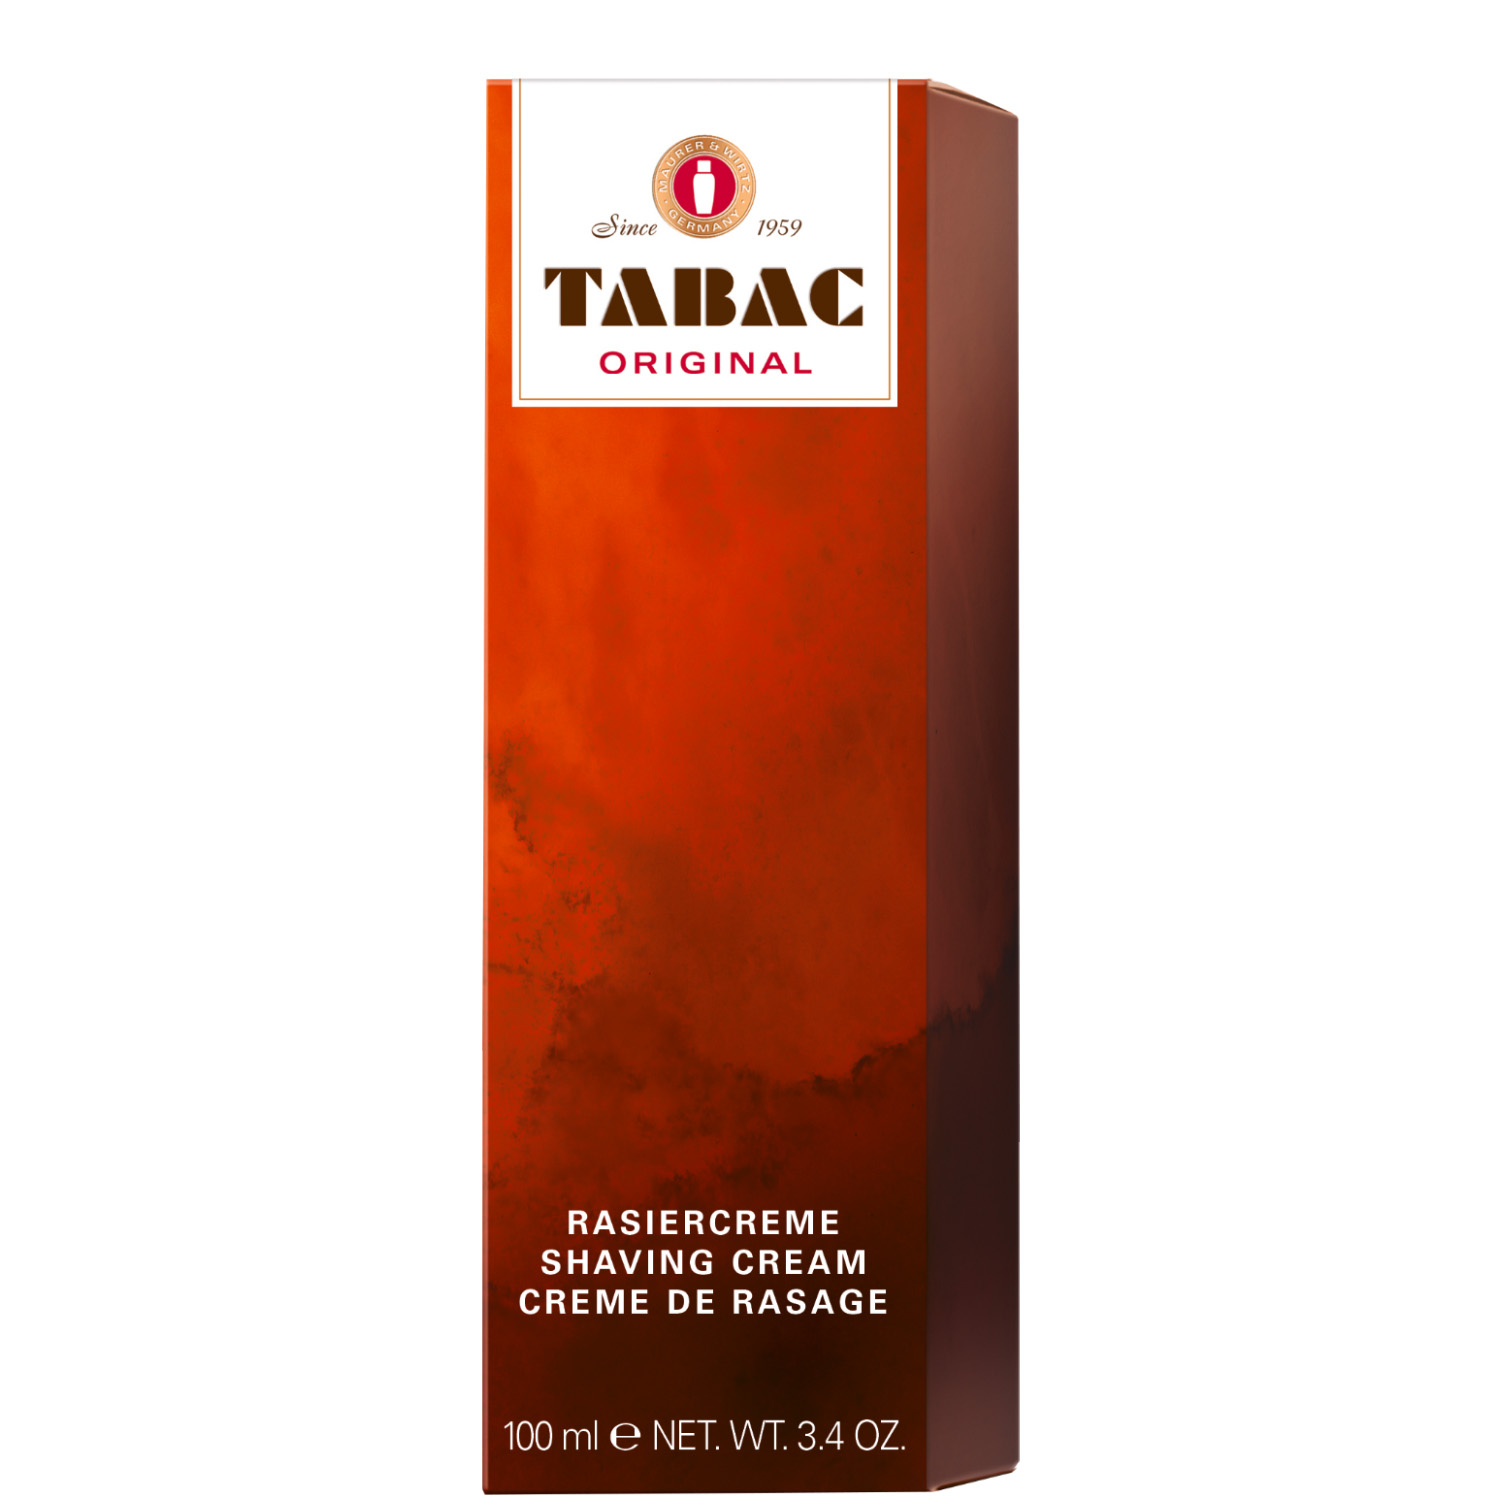 Tabac Original Rasiercreme 100ml